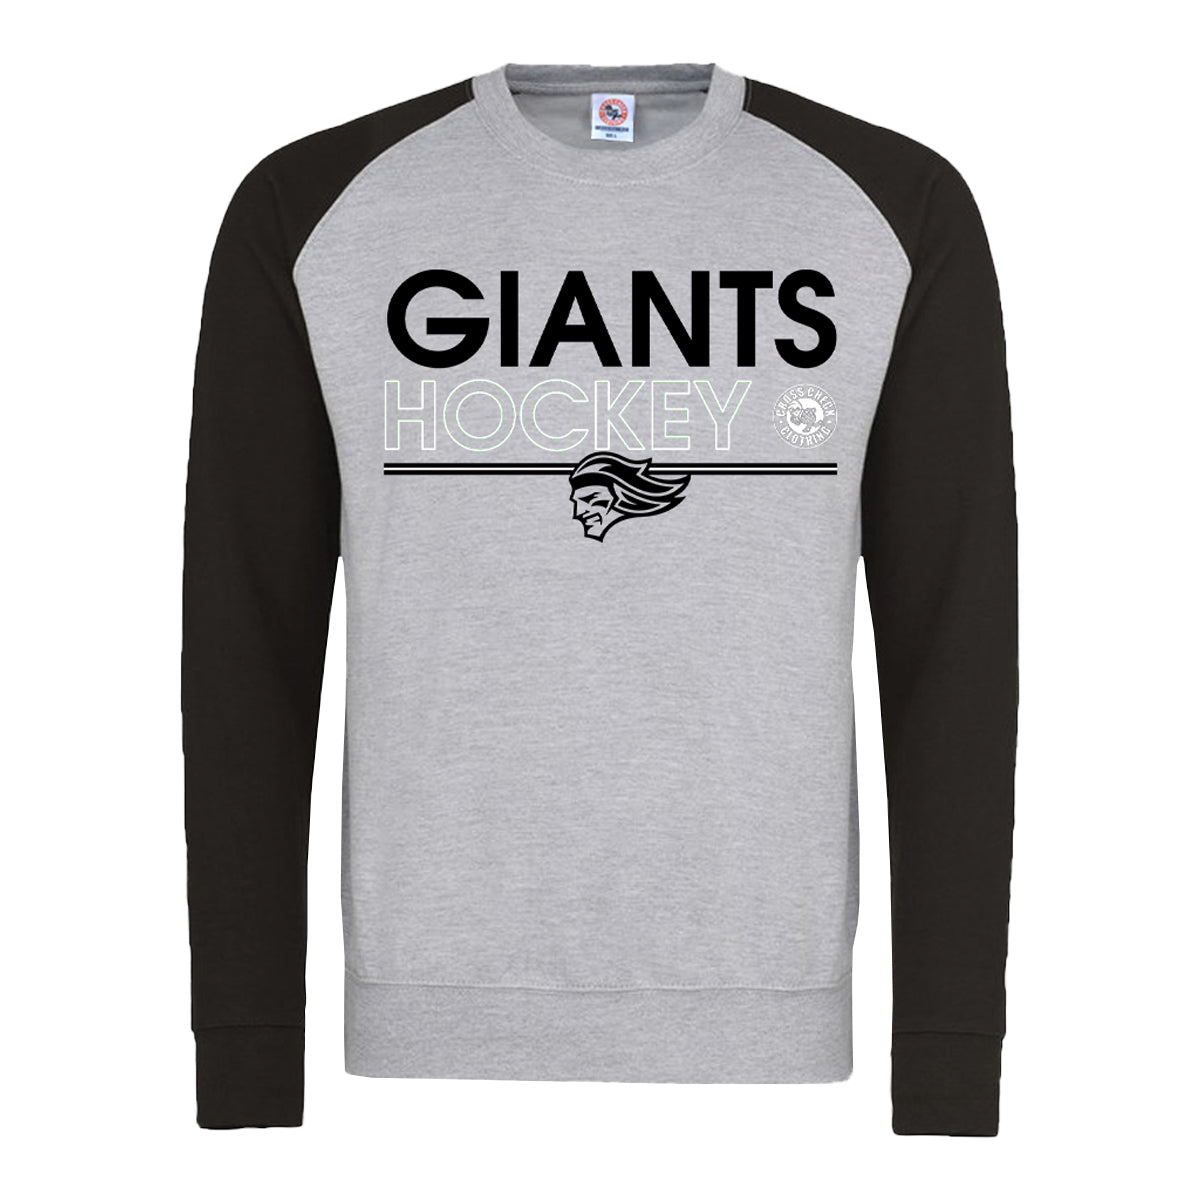 Belfast Giants Cross Check Clothing Giants Sweatshirt